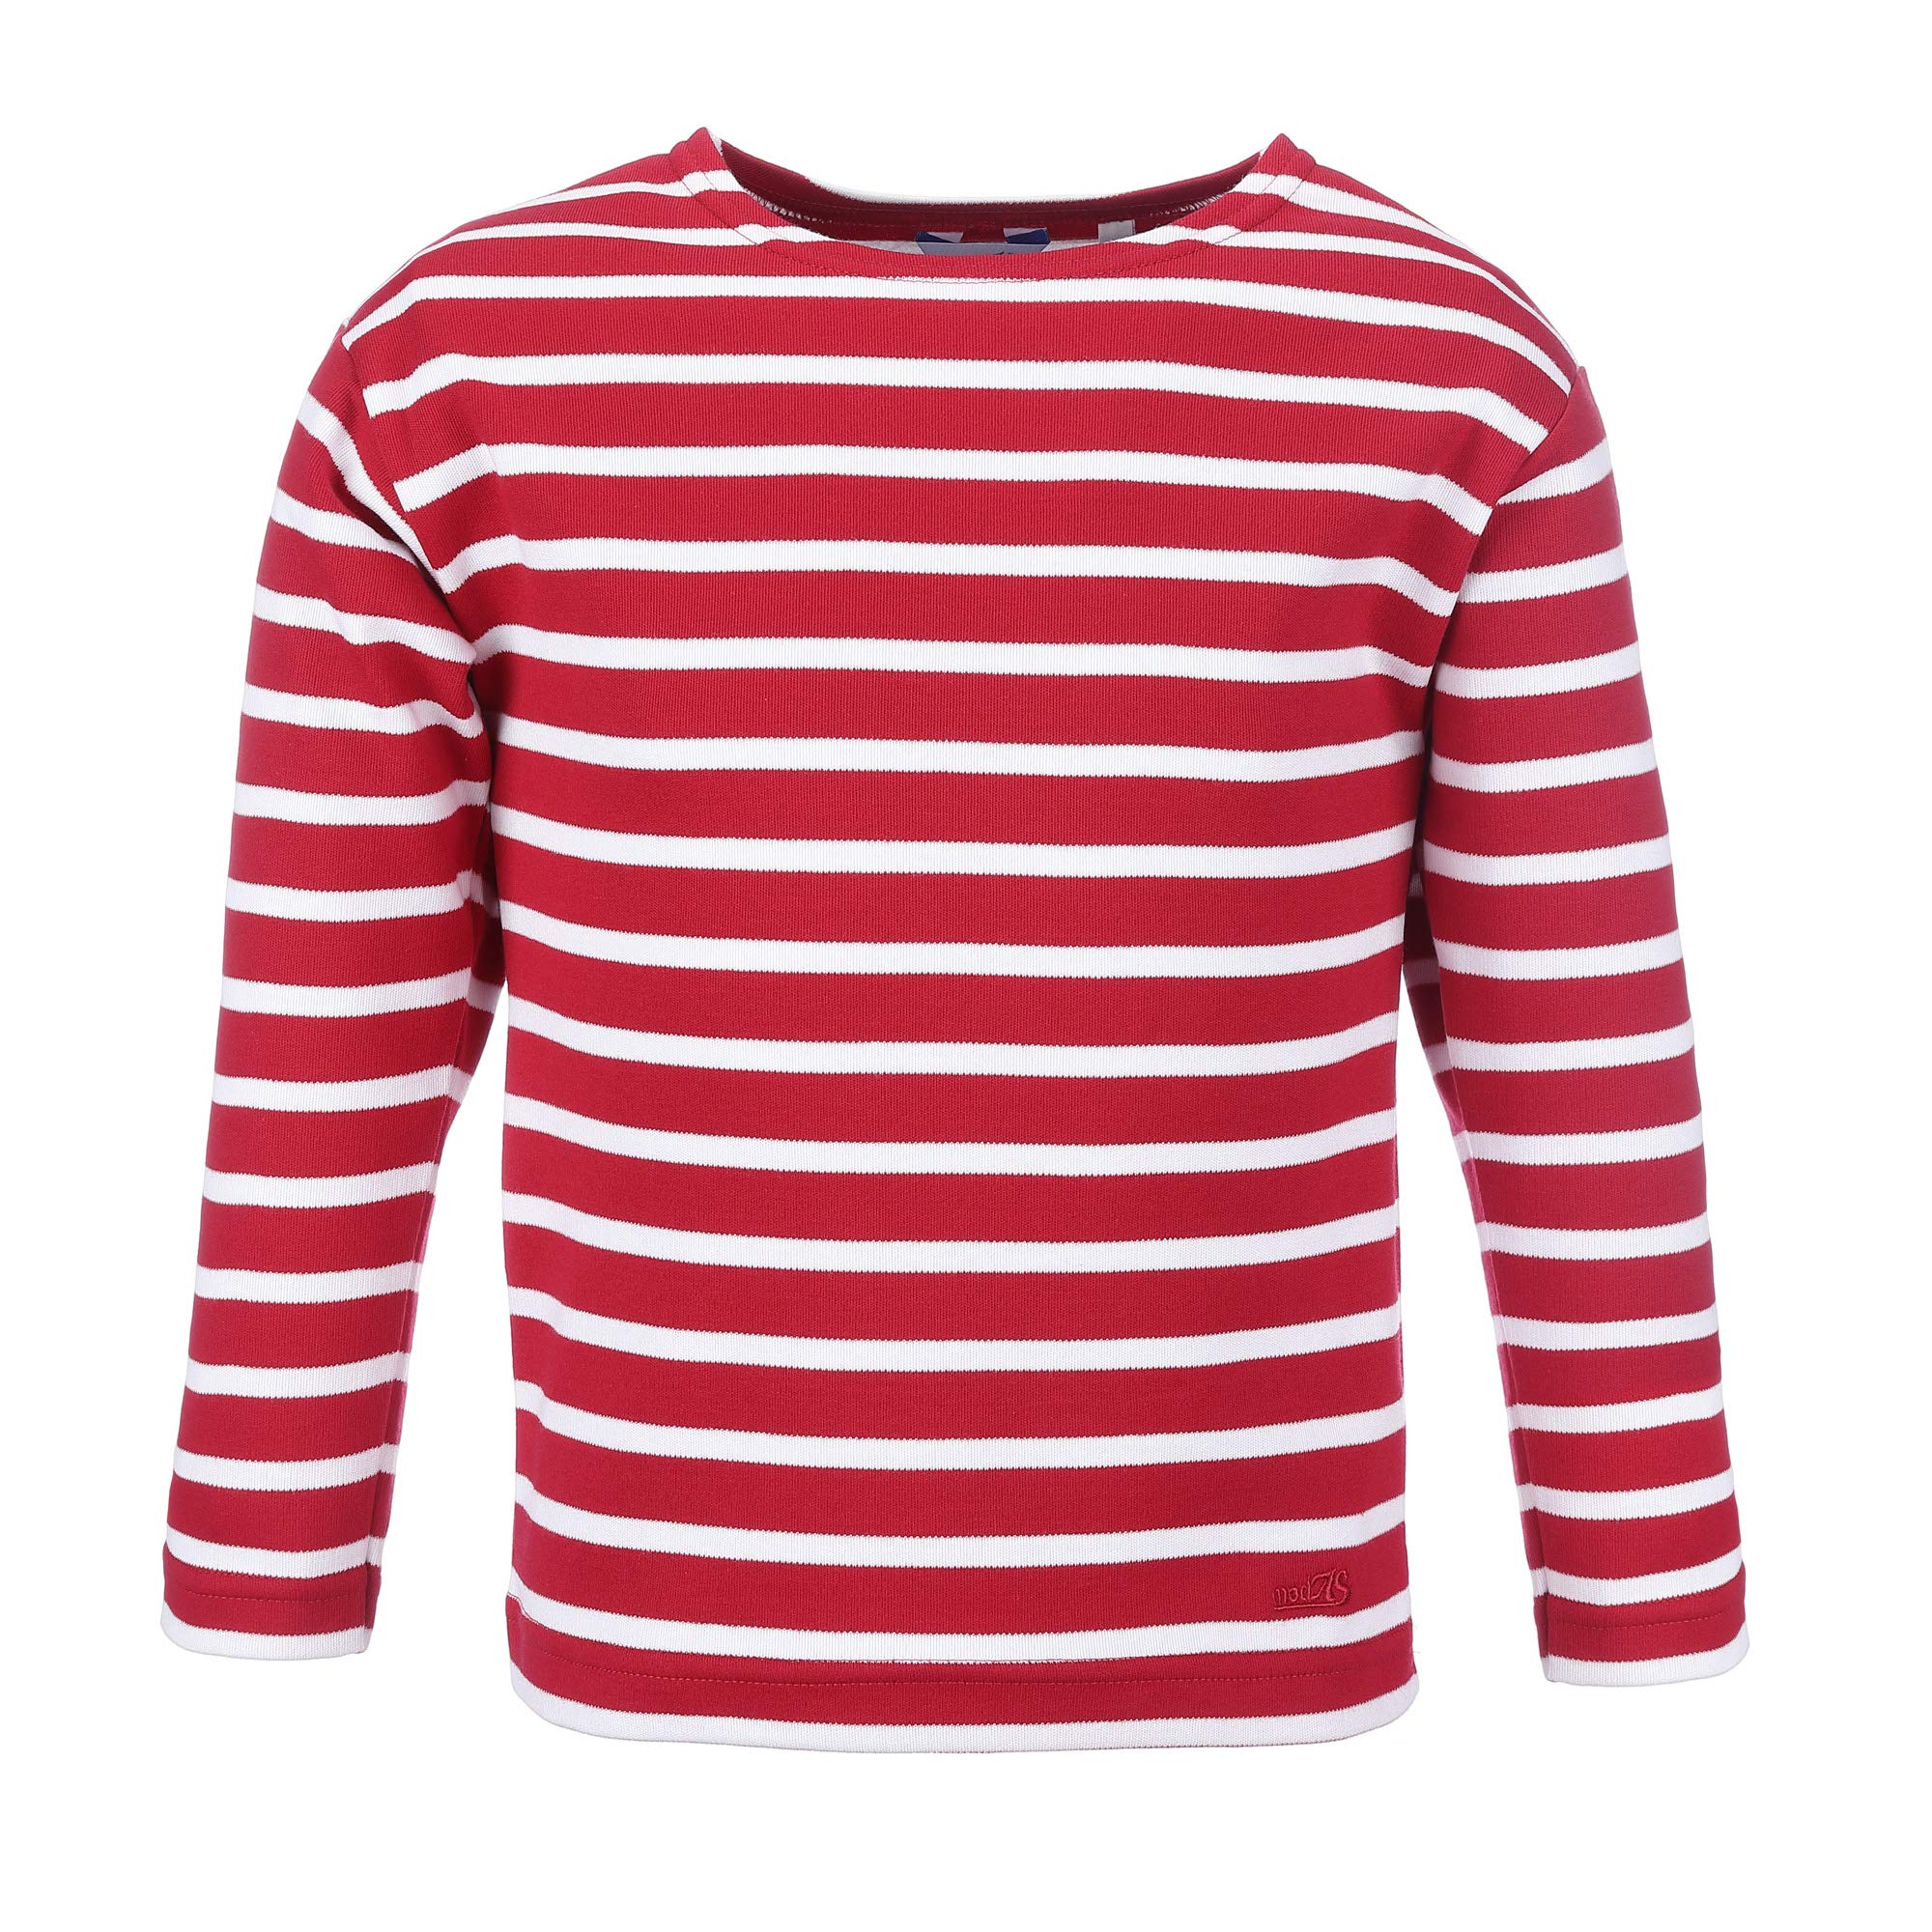 Bretonisches Kinder Shirt Langarm Pullover gestreift Sweatshirt Pulli (02 rot/weiß, 140)